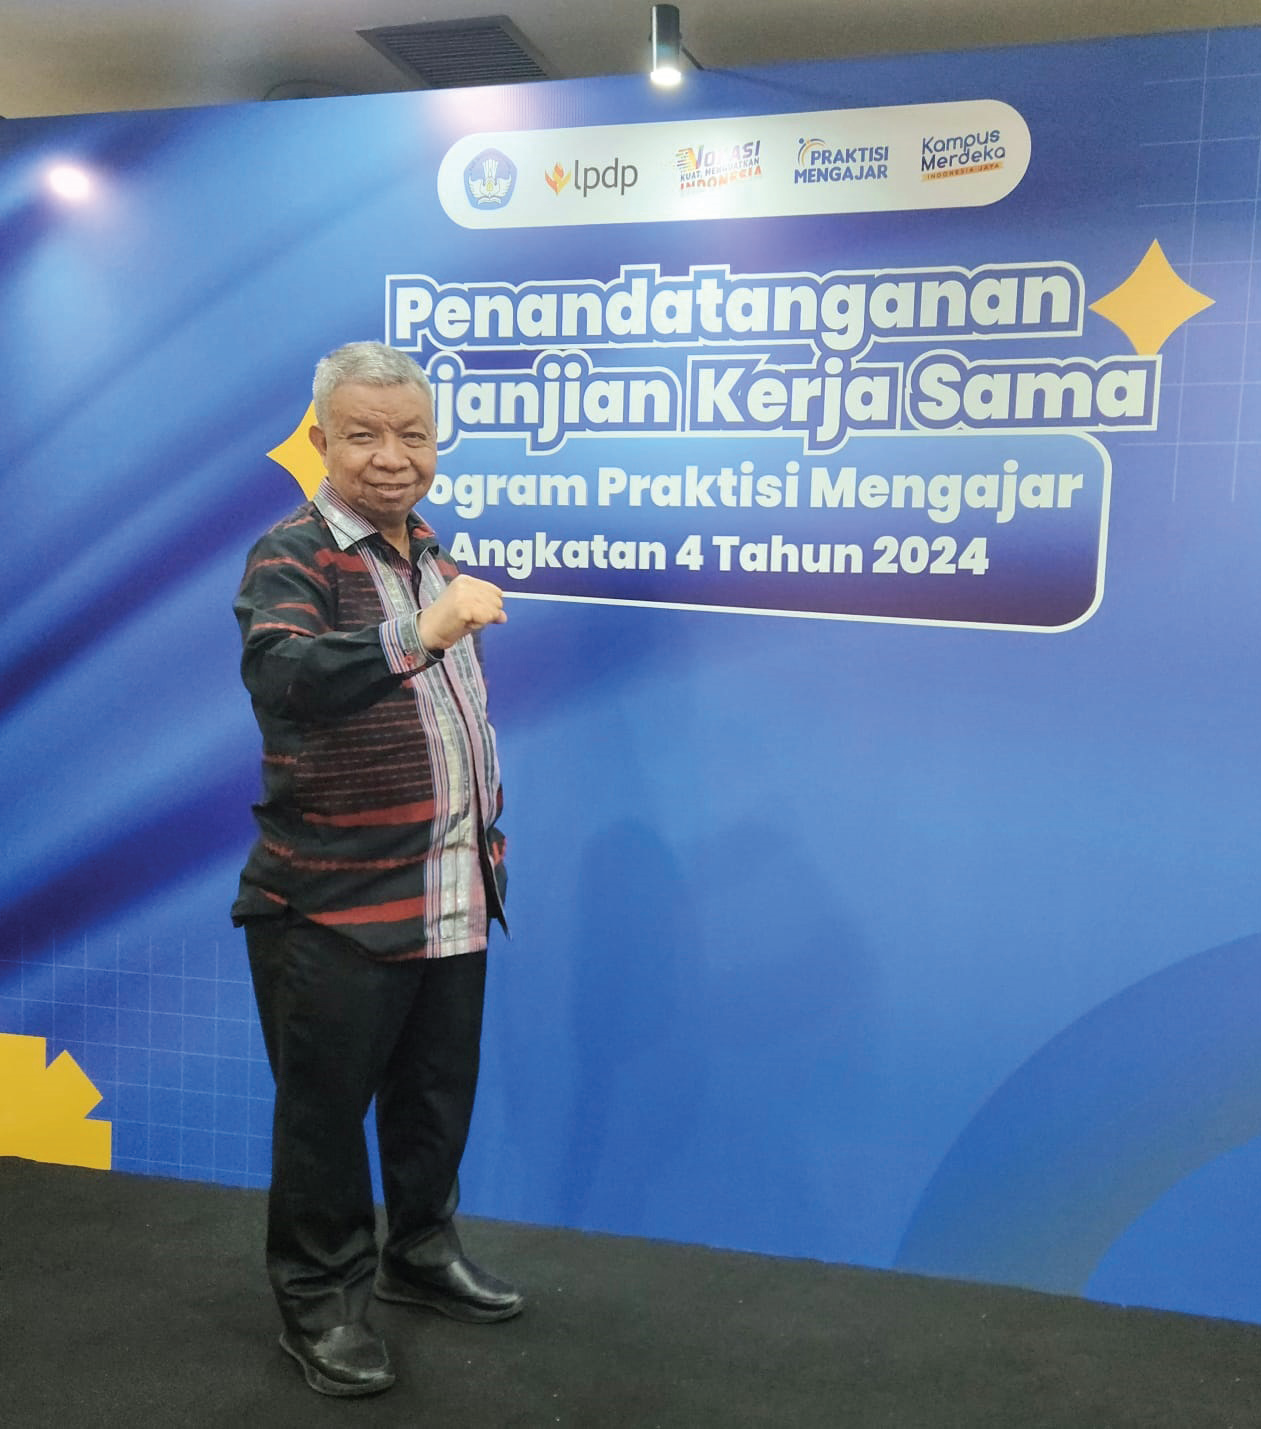 Rektor Unsultra, Prof. Dr. Andi Bahrun, M.Sc., Agric., saat menghadiri penandatanganan Perjanjian Kerjasama (PKS) Program Praktisi Mengajar Angkatan 4 tahun 2024. (Humas Unsultra)